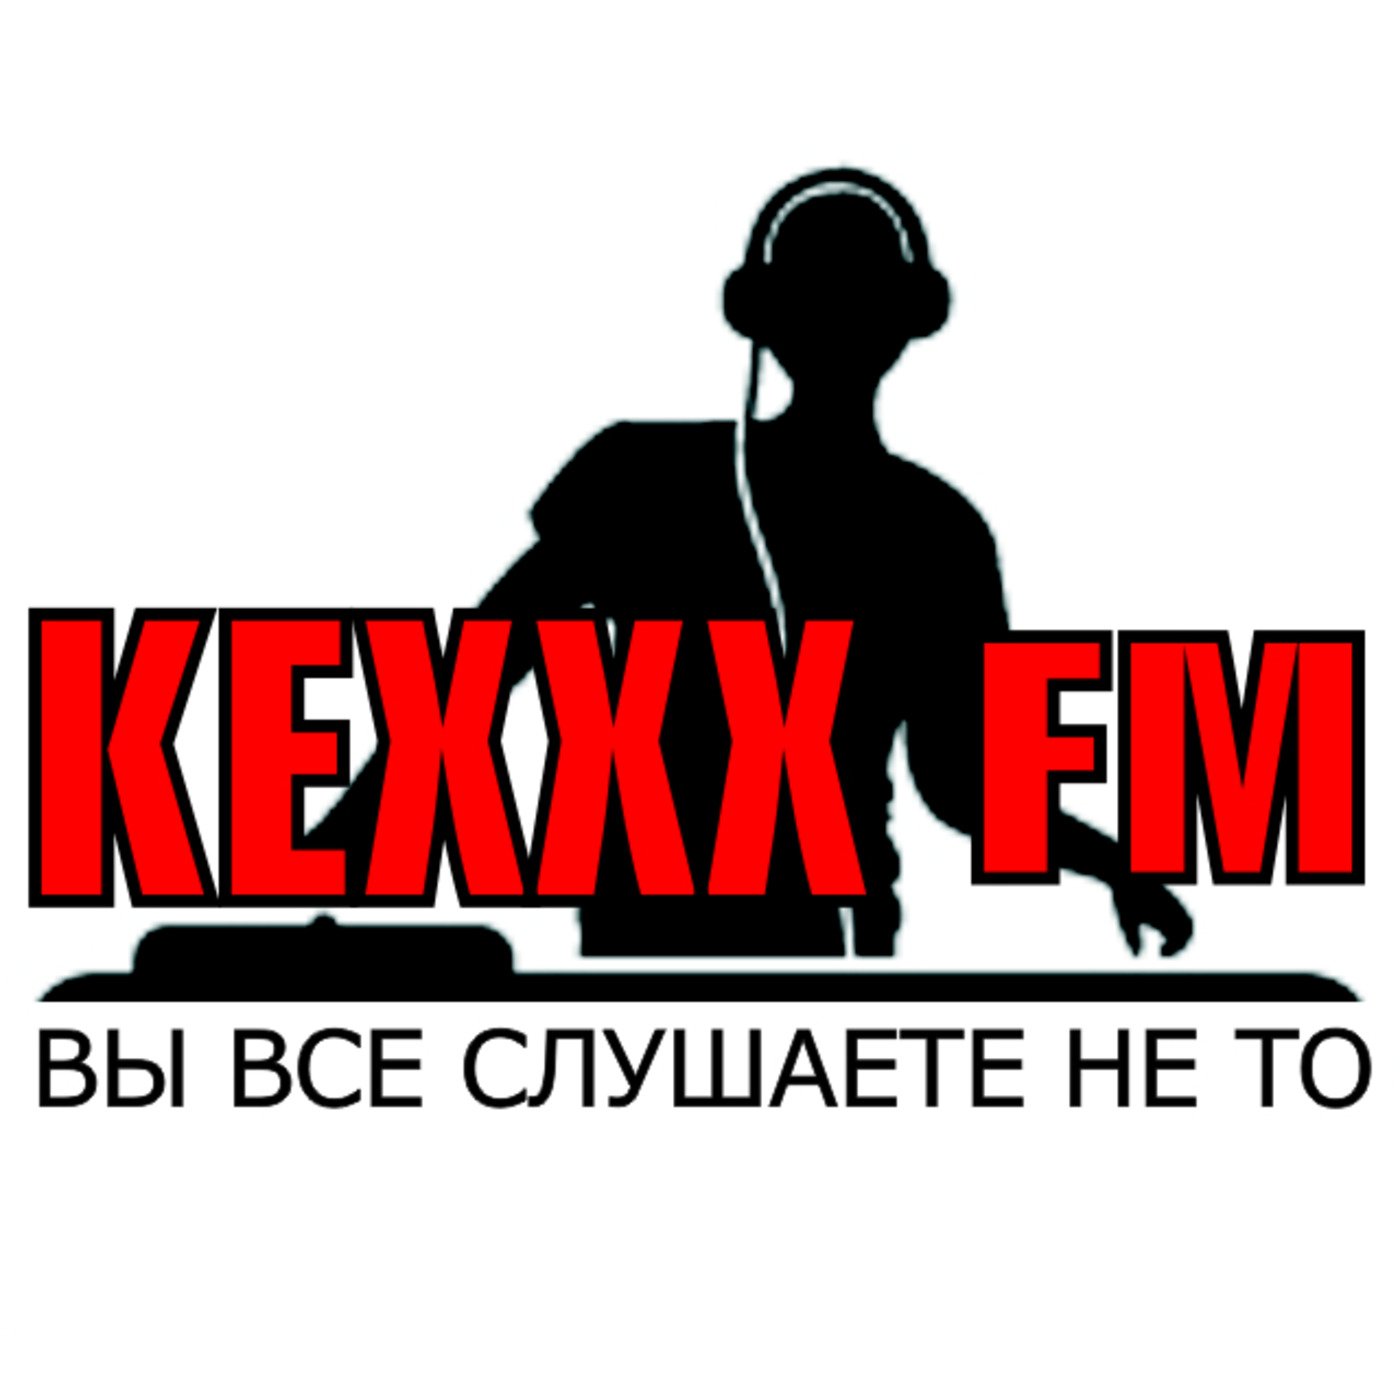 Live from SHERWOOD on KEXXX FM - dj Noidor